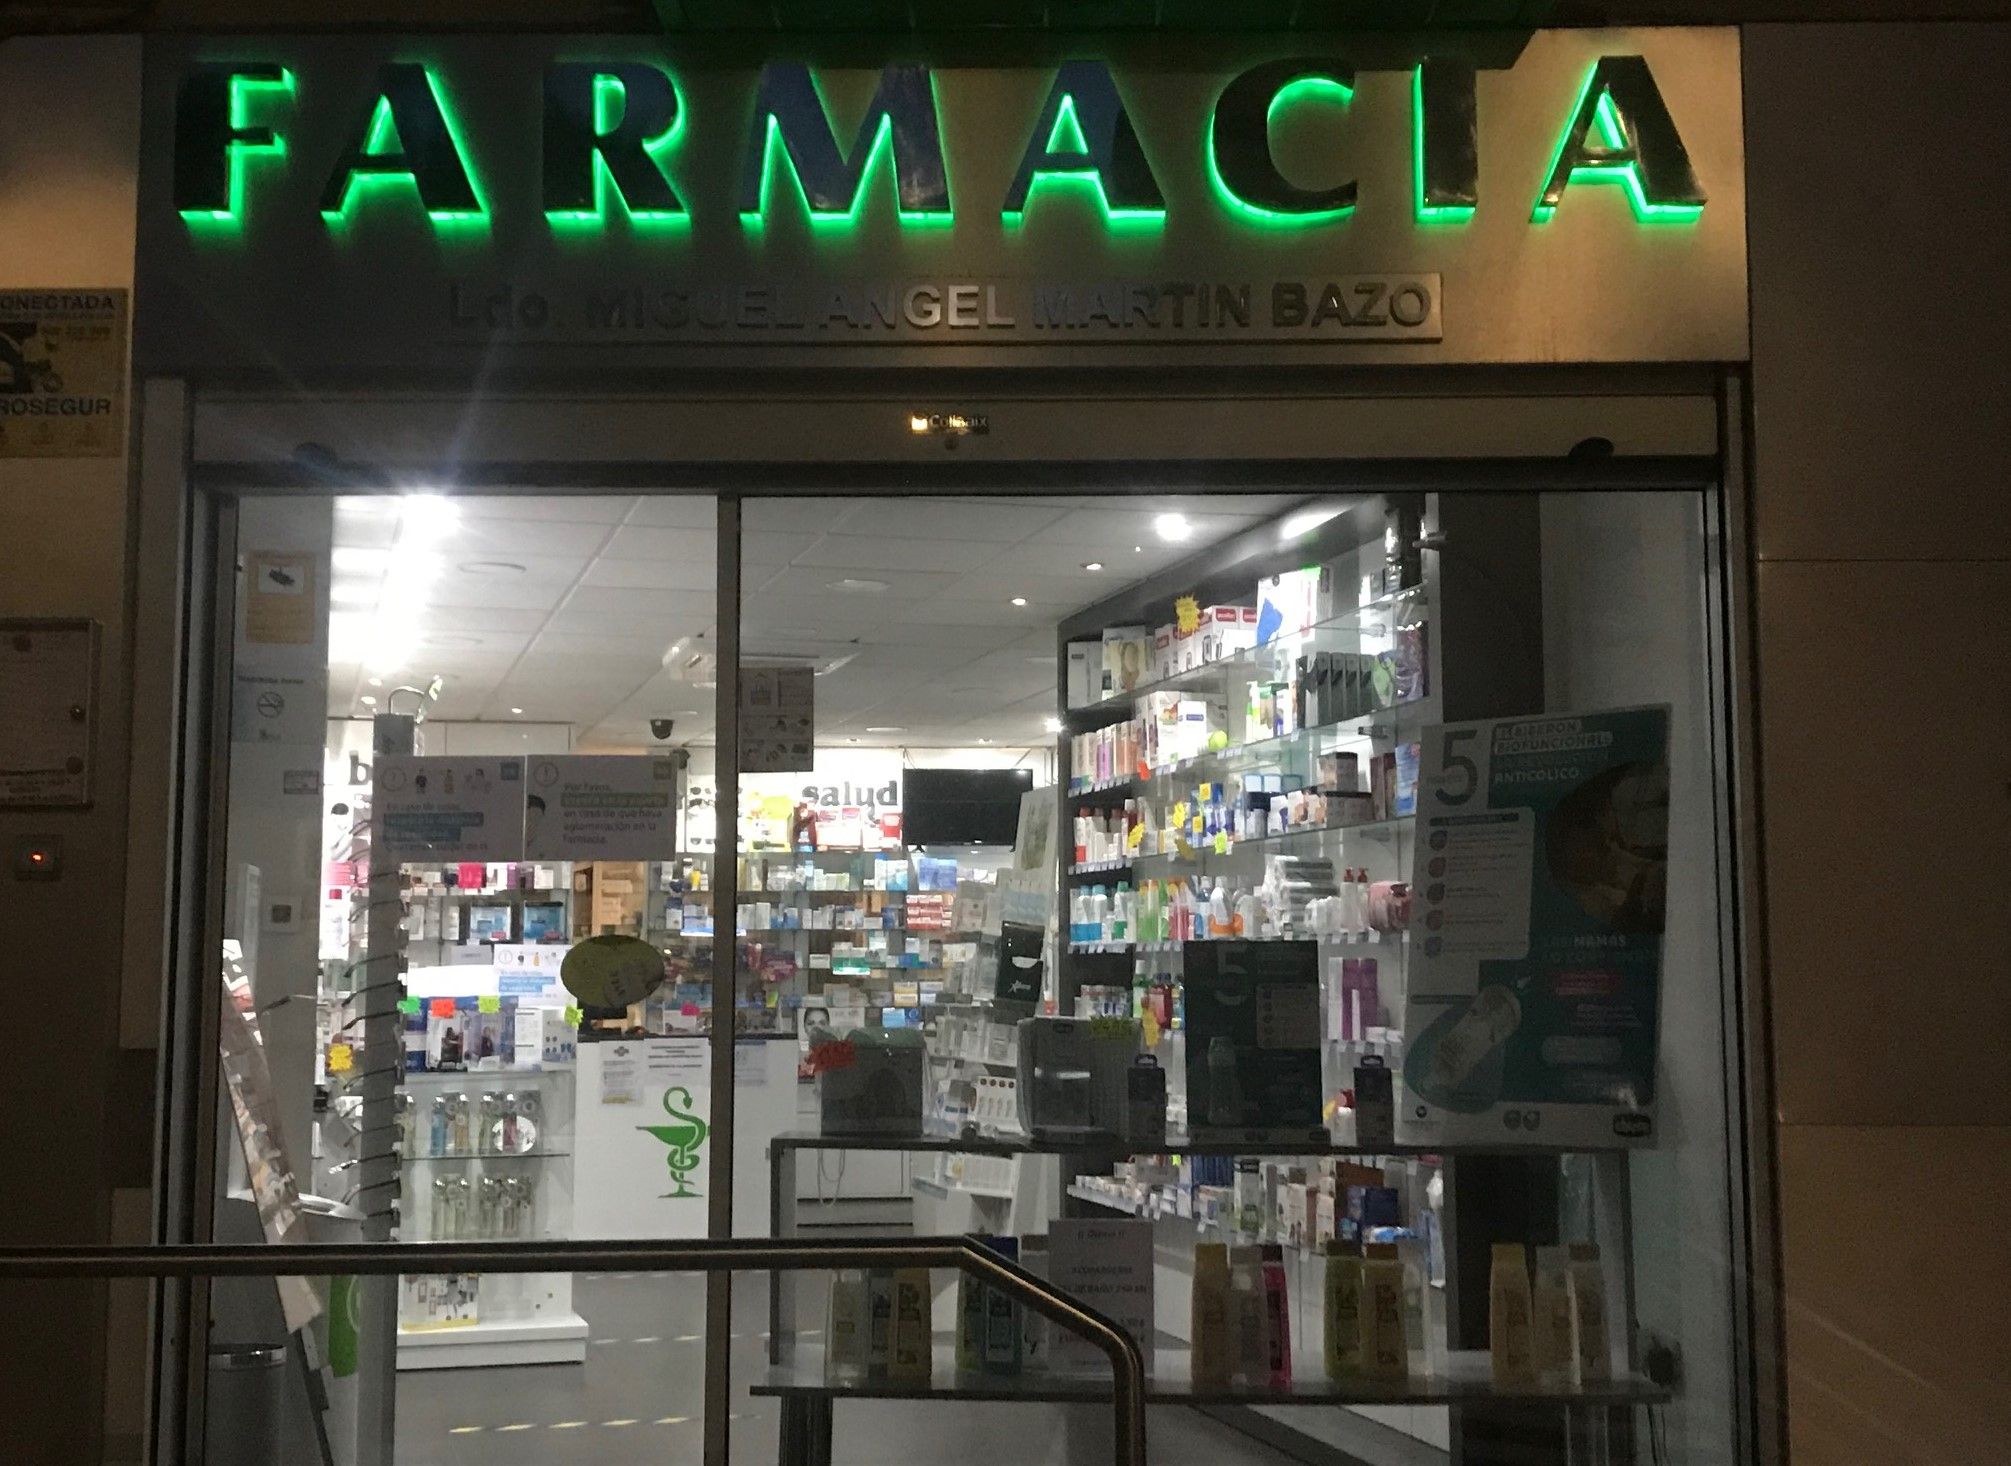 Farmacia Miguel Ángel Martín Bazo